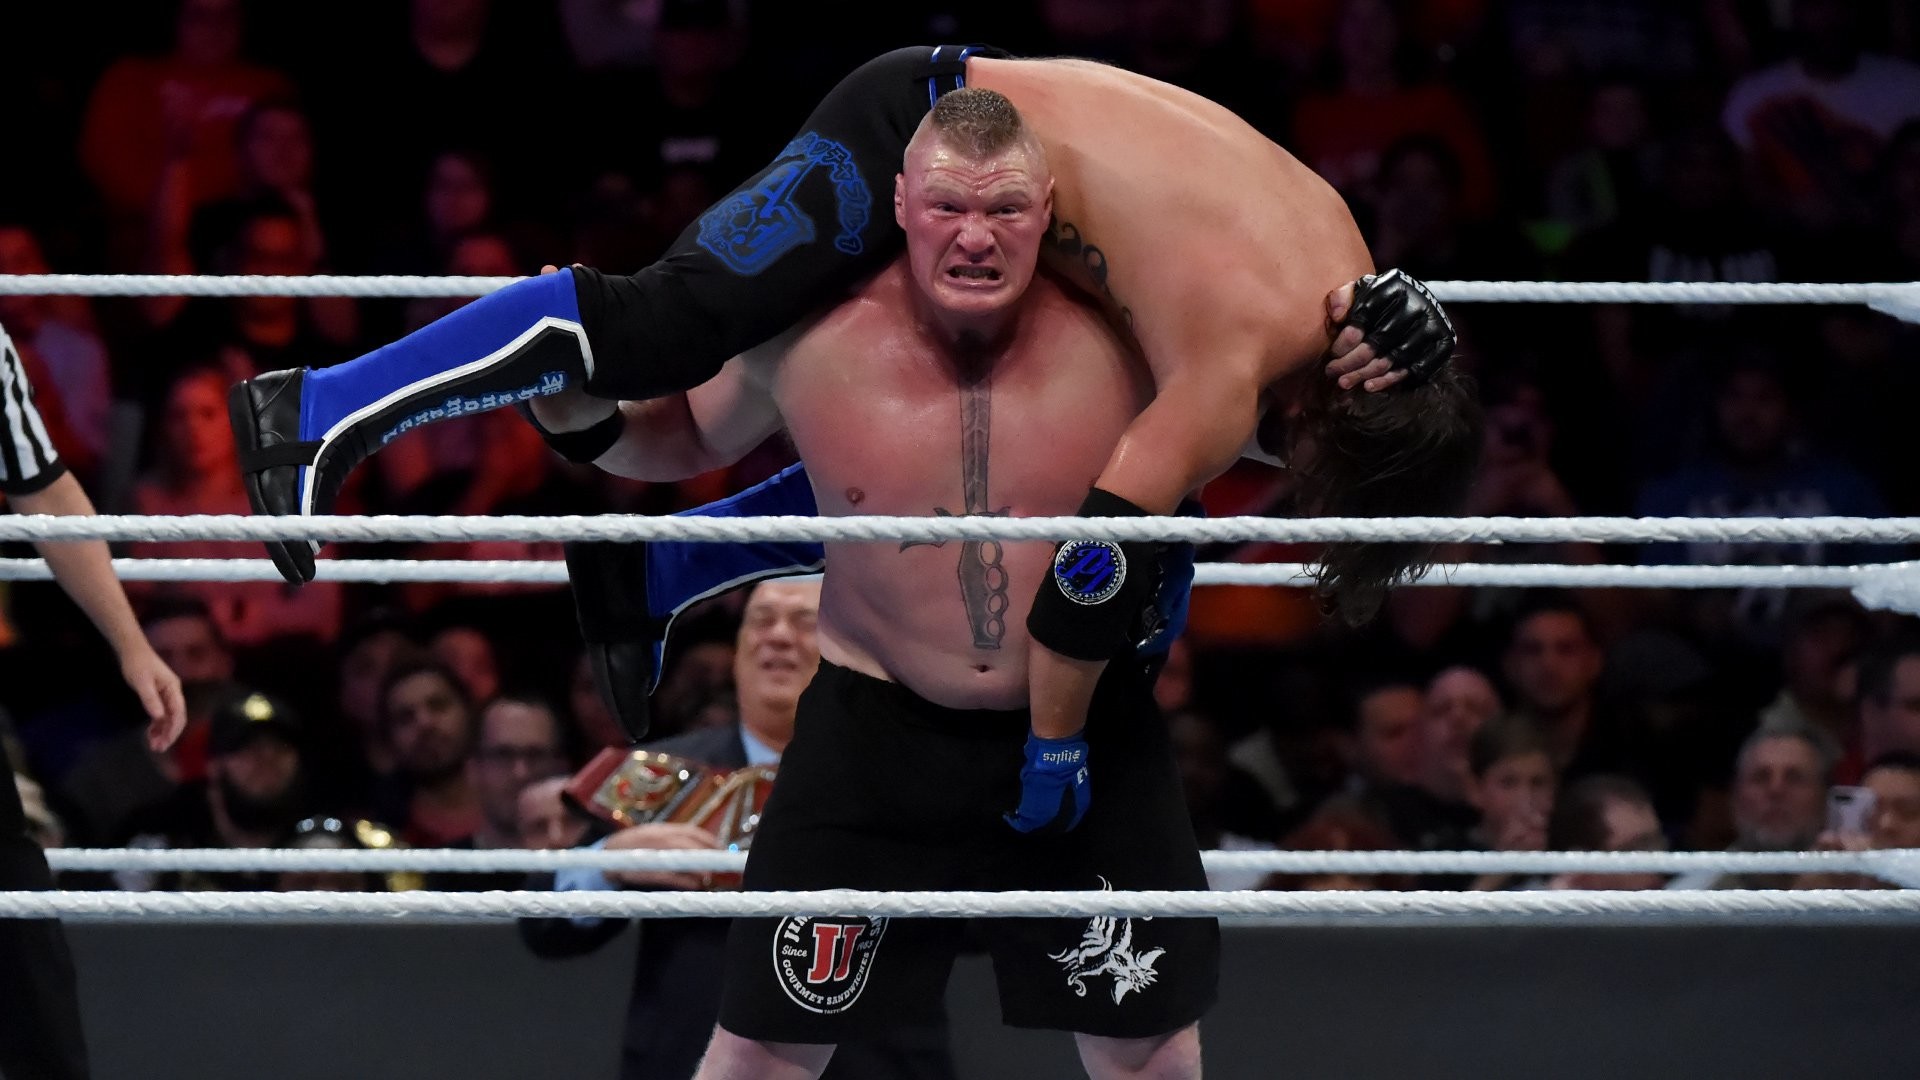 Bilindiği üzere Vince McMahon, AJ Styles vs. Brock Lesnar maçının değişimin...